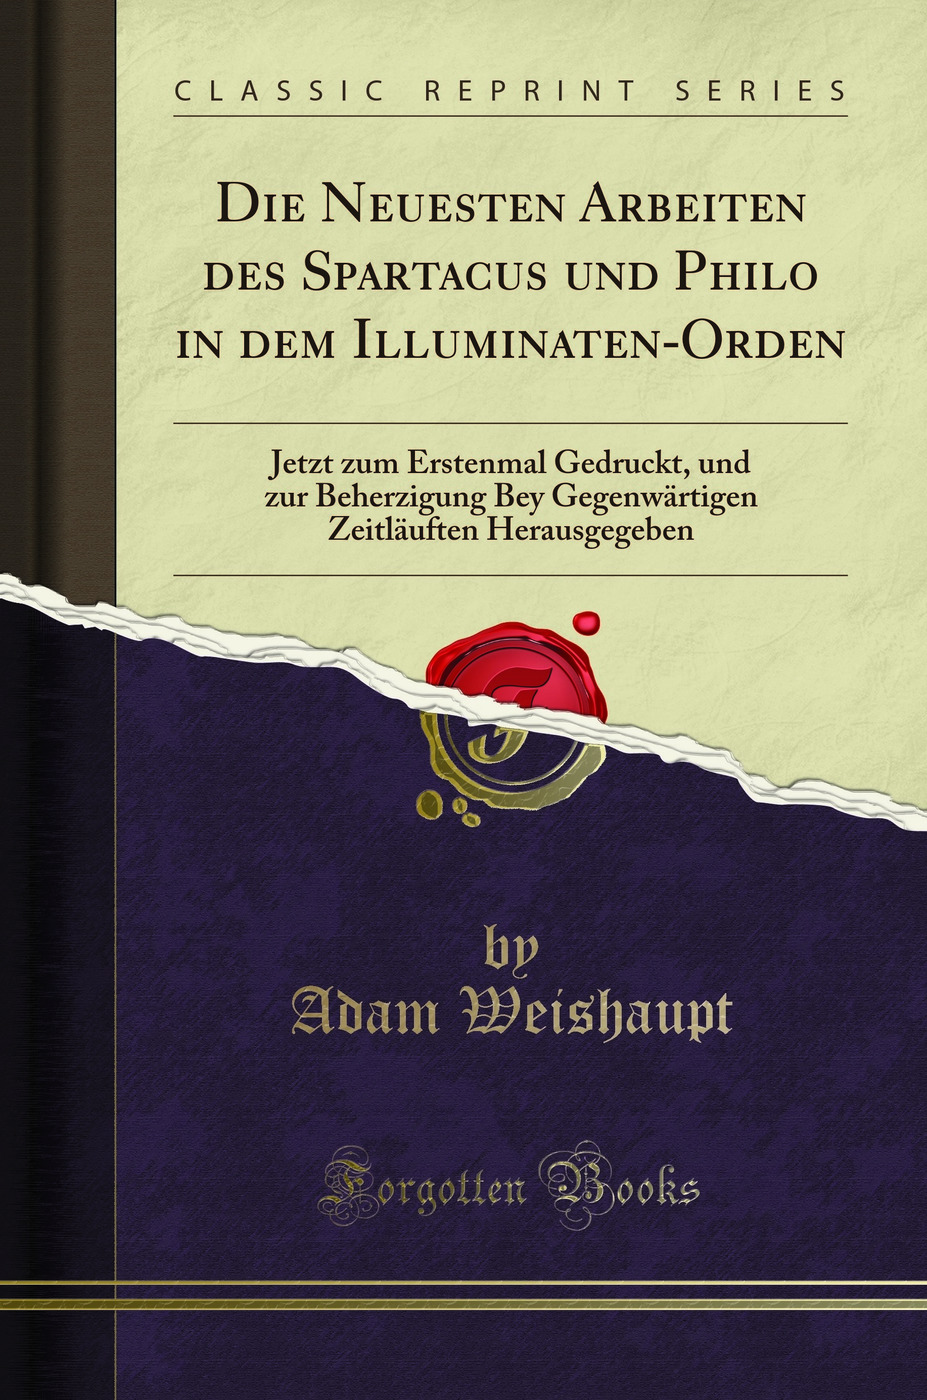 Die Neuesten Arbeiten des Spartacus und Philo in dem Illuminaten-Orden - Adam Weishaupt, Adolf Knigge